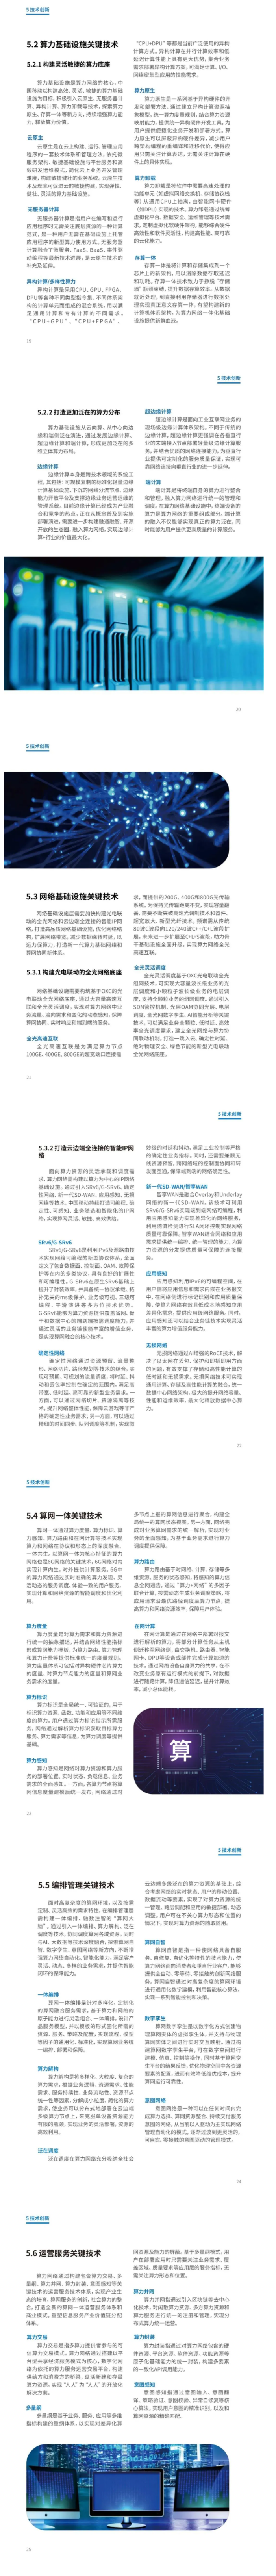 4-FireShot Capture 077 - 刚刚，中国移动在中国移动大会上发布《中国移动算力网络白皮书》！ - mp.weixin.qq.com.png